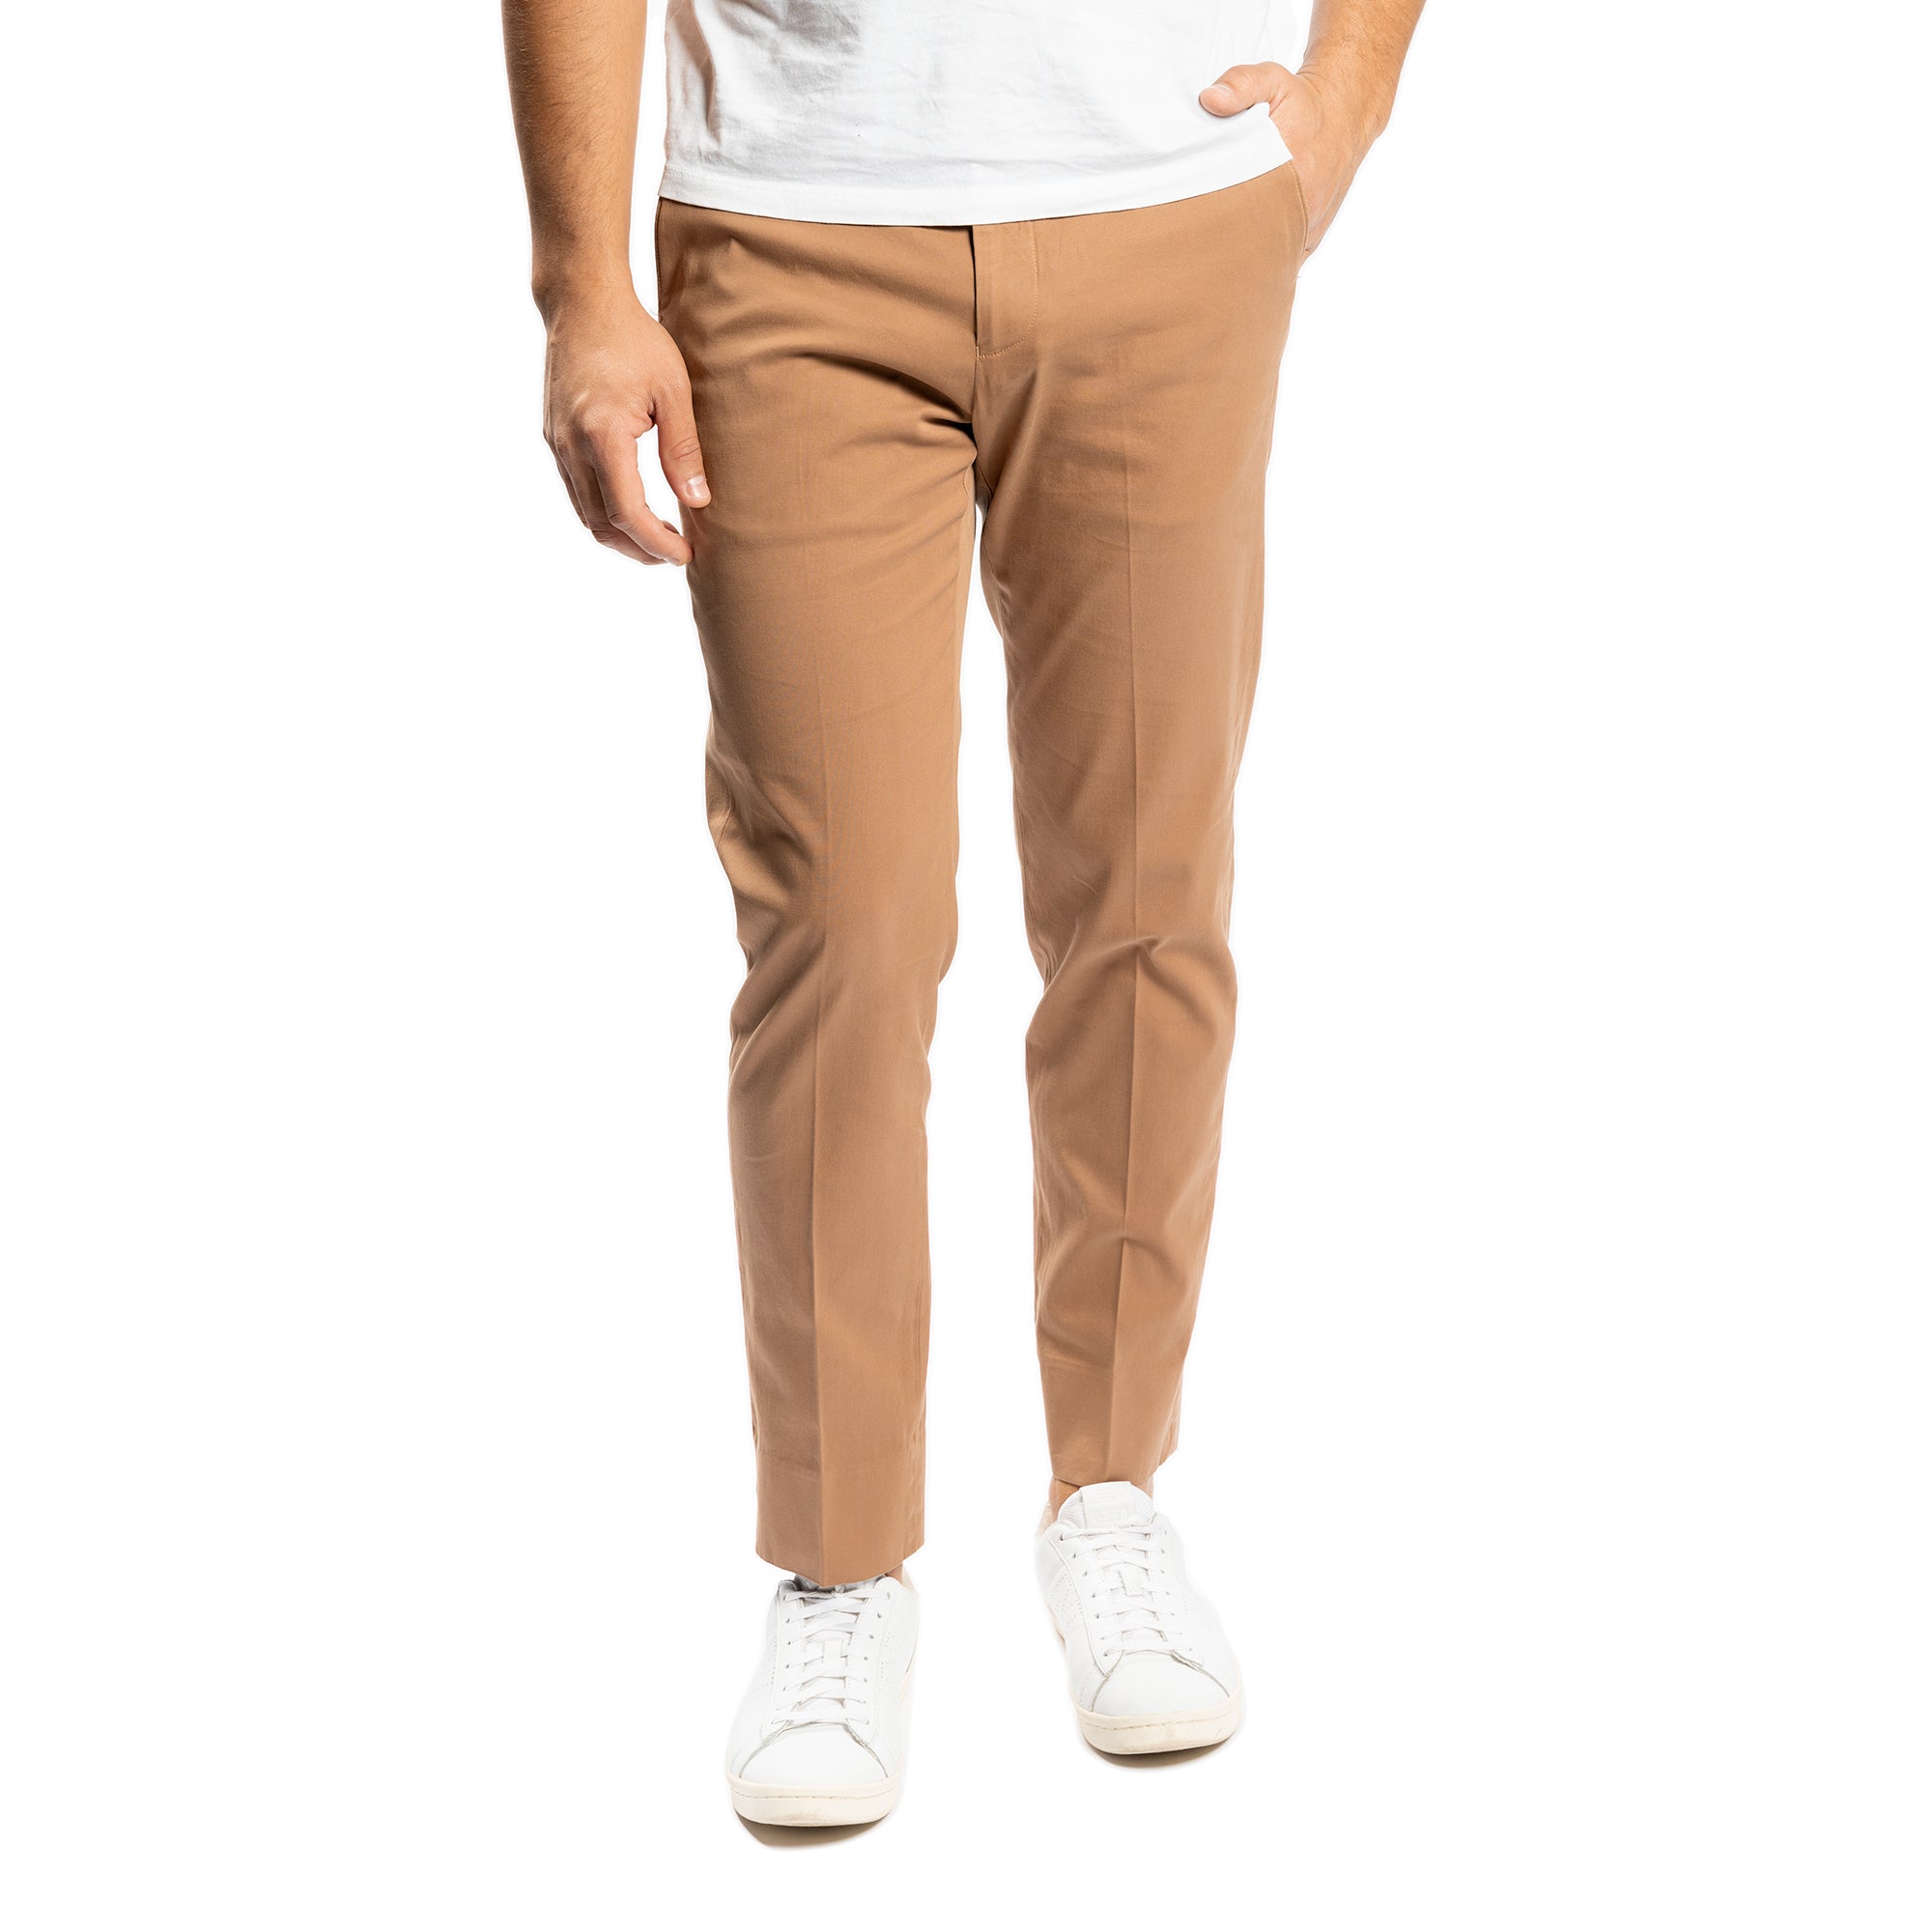 Stretch cotton trousers Lubono | 54 | K40300-7900_54